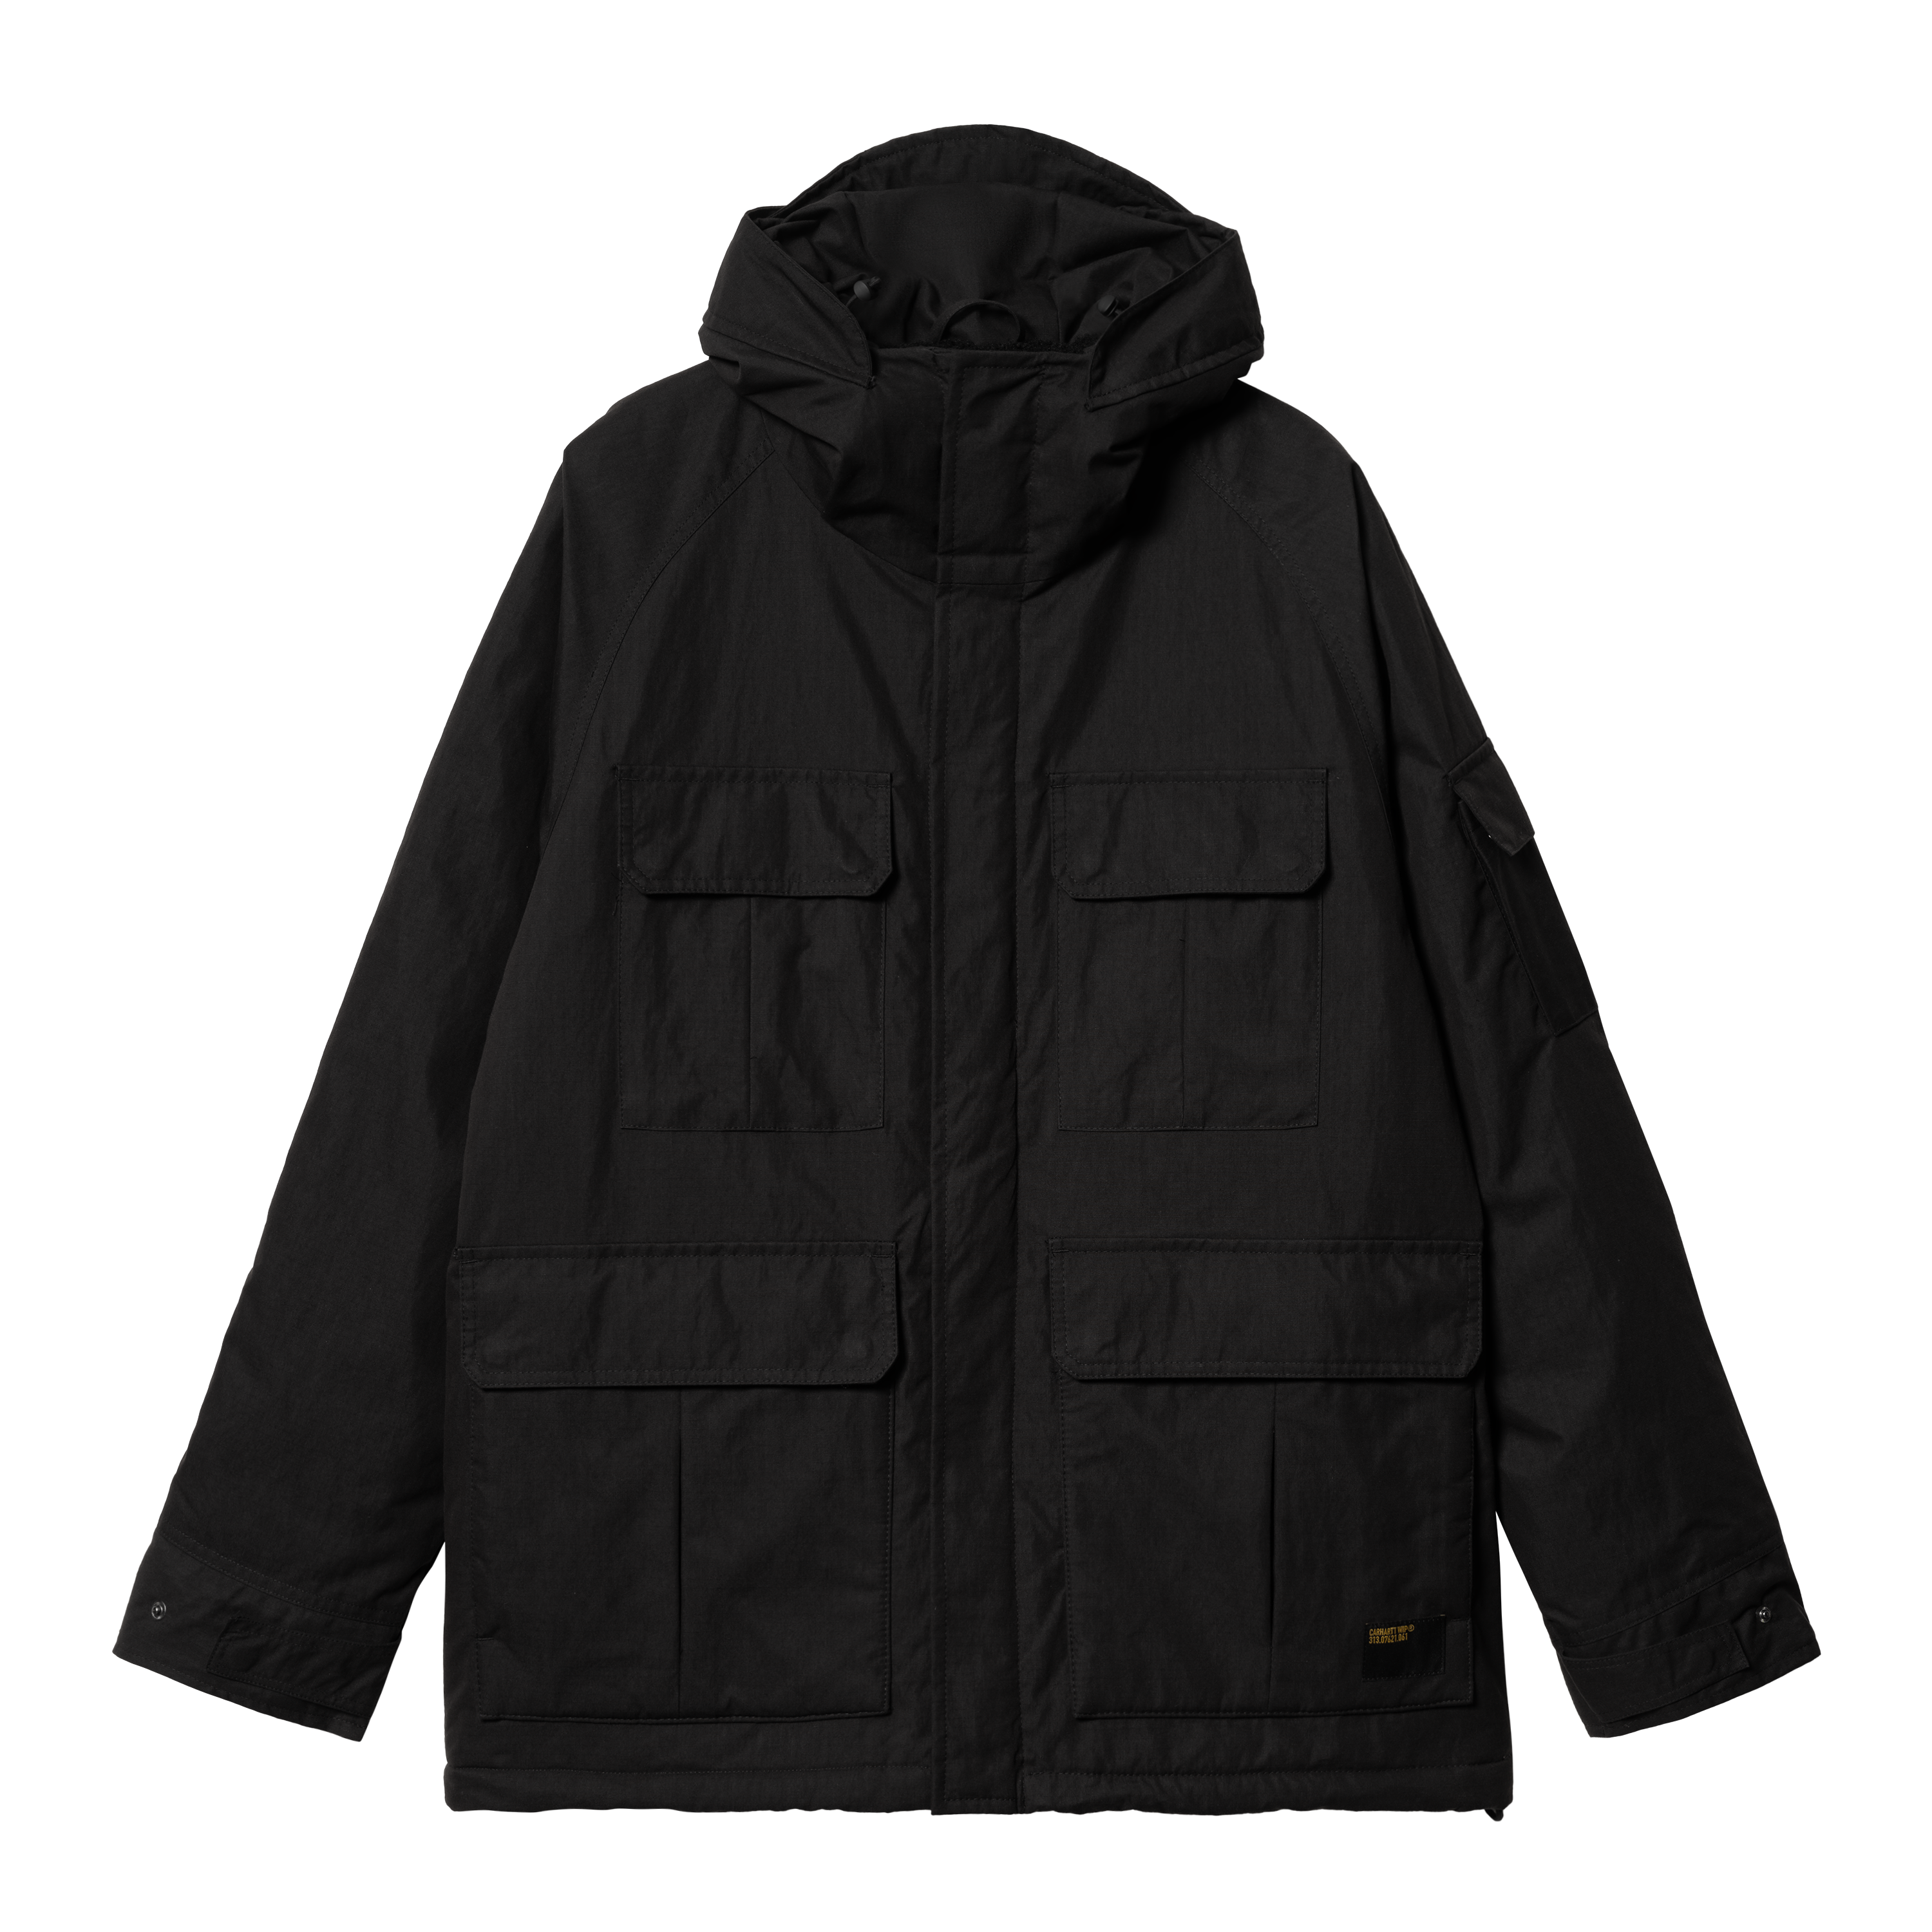 Carhartt WIP Haste Jacket in Black